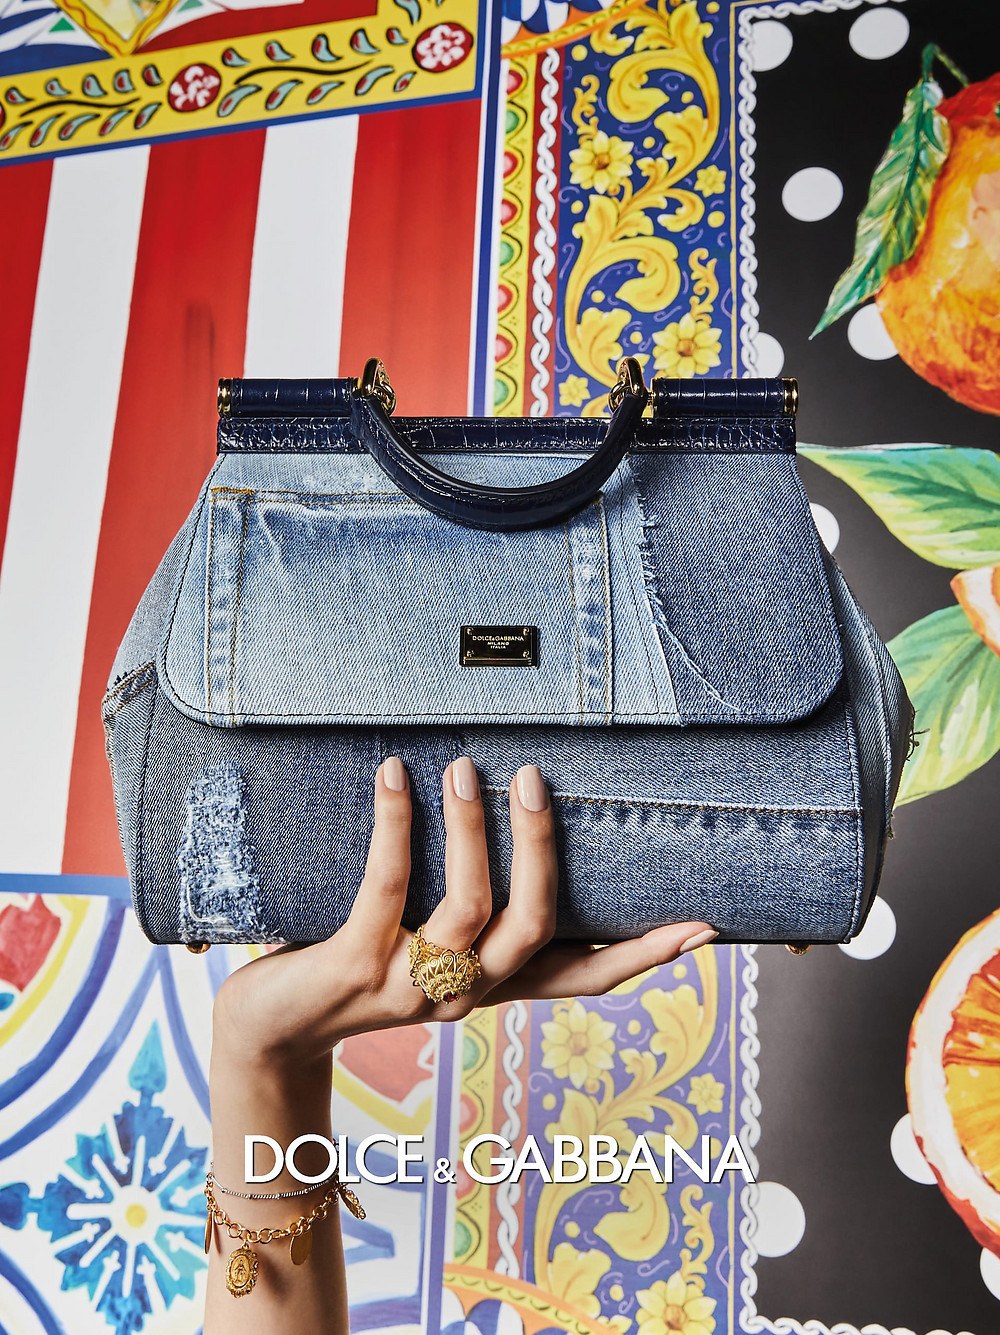 imagen 6 de Jeans y color, así son las mujeres Dolce & Gabbana y sus bolsos la próxima primavera.